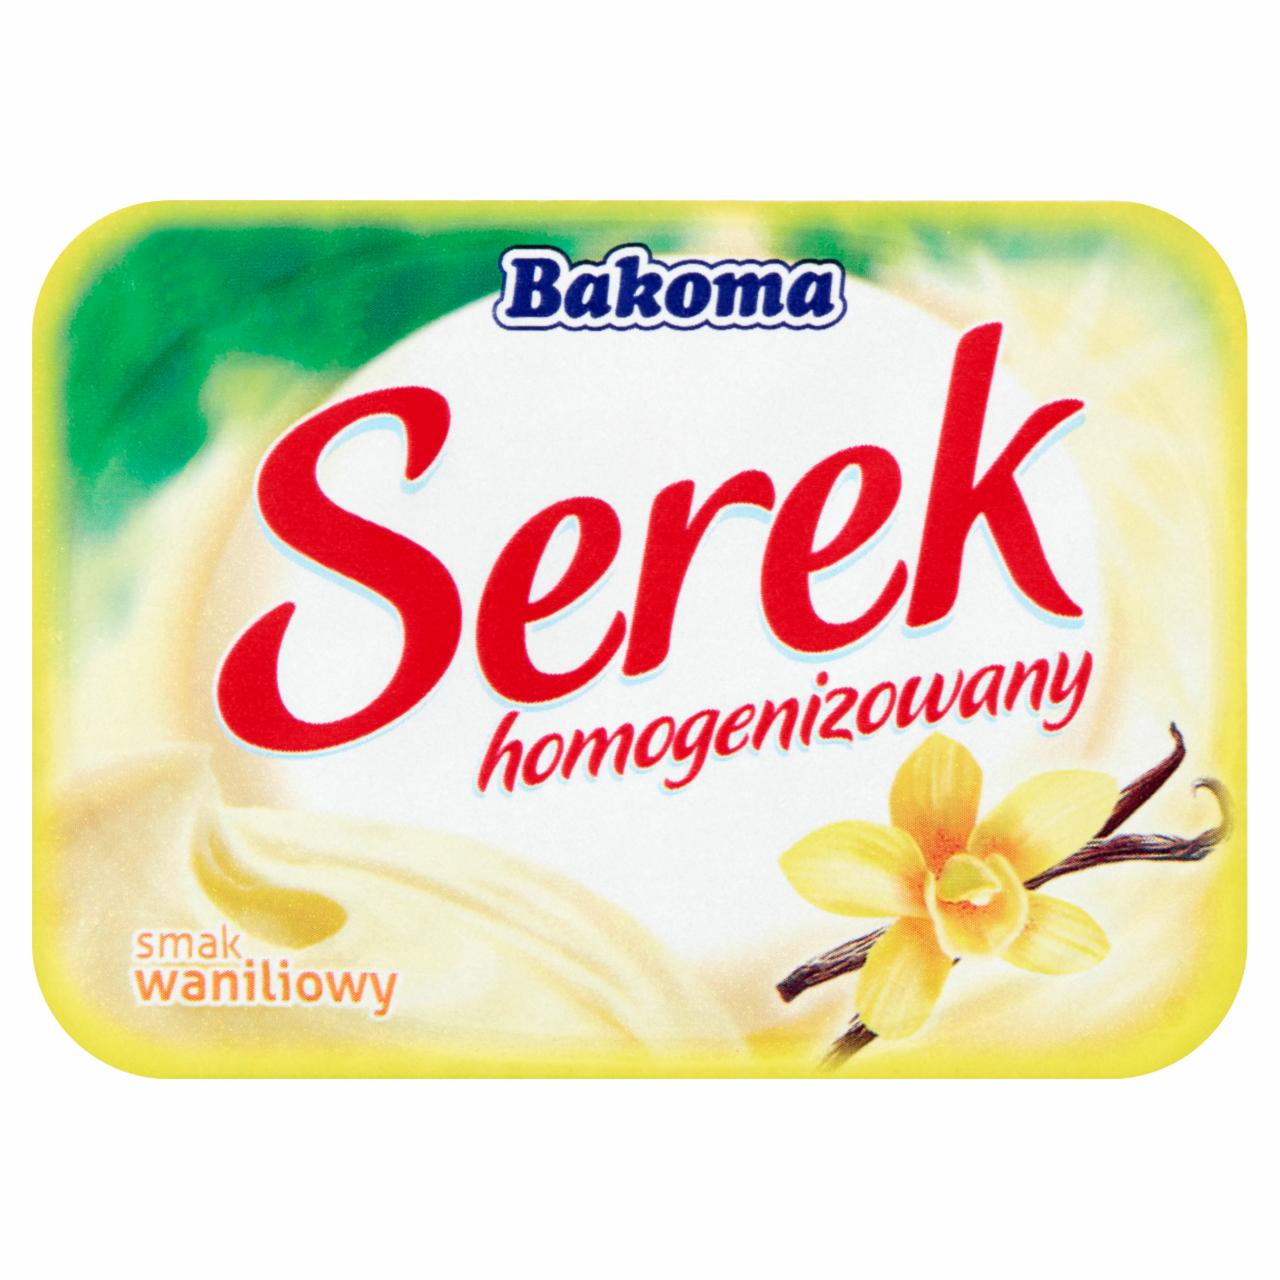 Zdjęcia - Bakoma Serek homogenizowany smak waniliowy 140 g